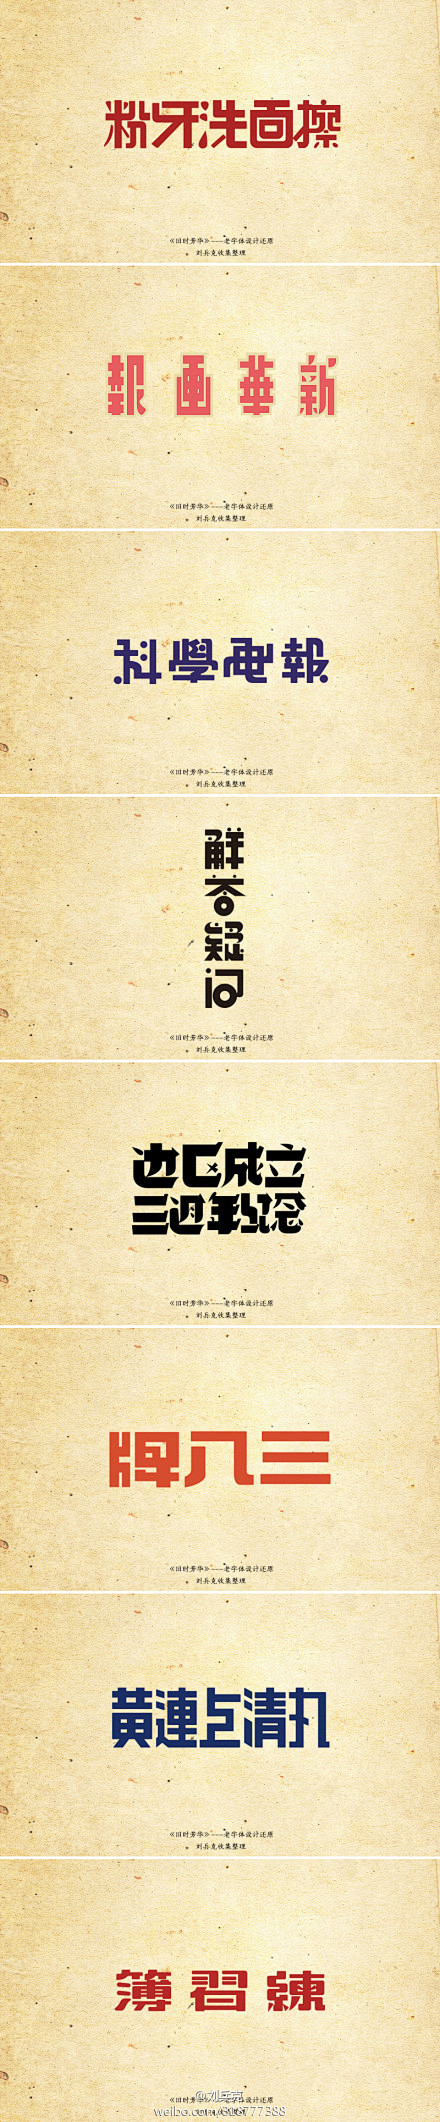 @刘兵克怀旧老字体设计欣赏《旧时芳华》